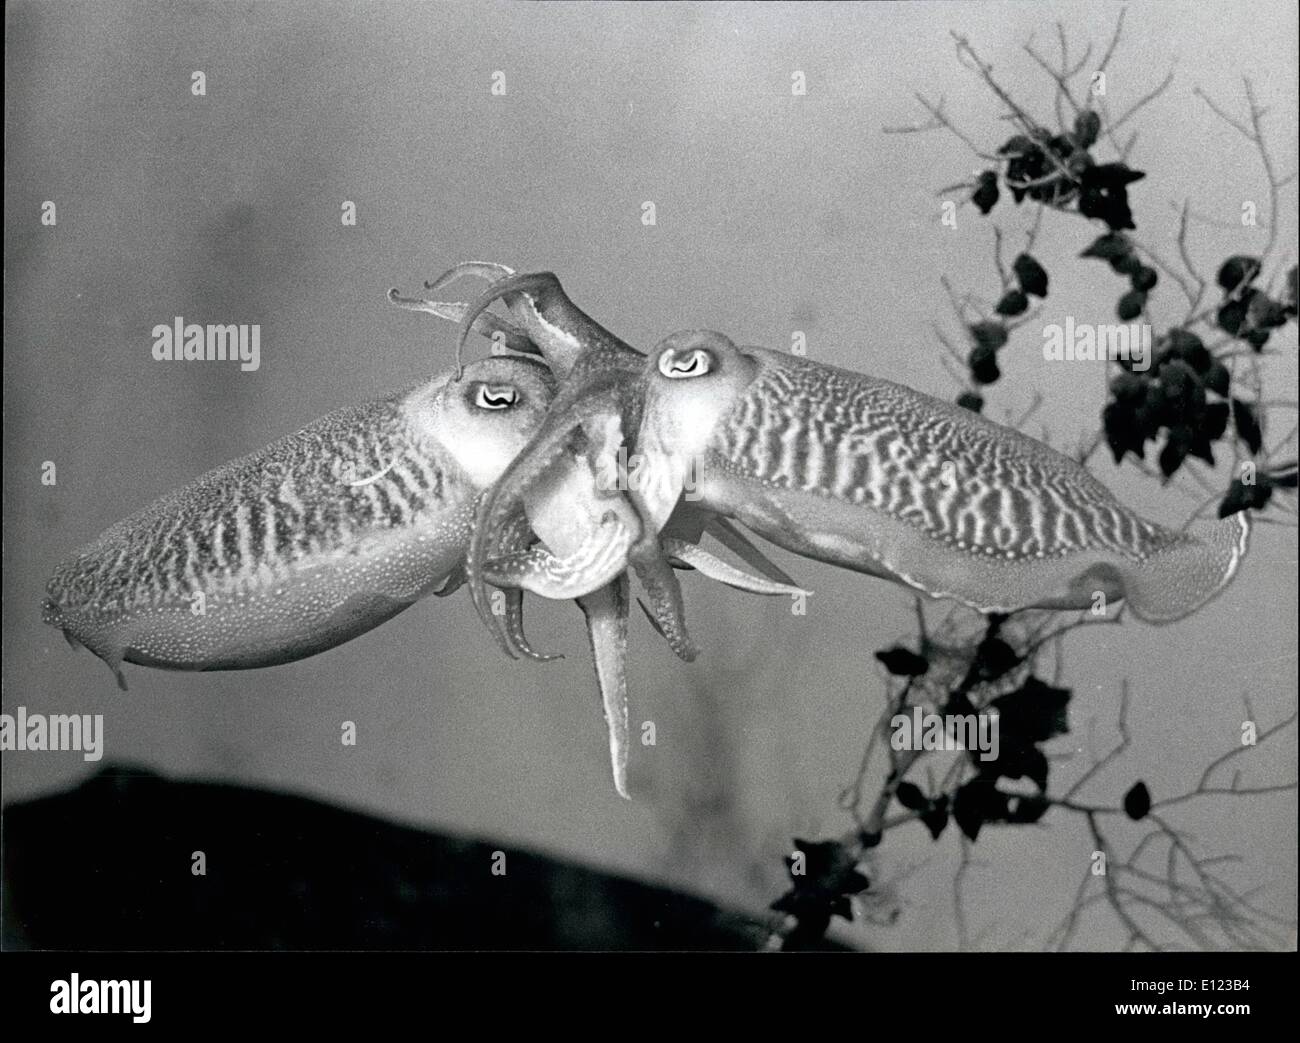 Diciembre 12, 1984 - Difícil cría de calamares una rareza en zoos europeos estos sepiaes, una especie de calamar con diez dedos, gestada desde ahora cinco generaciones en el zoológico de Basilea, Suiza. Nuestra imagen se muestra durante el apareamiento. Una hora más tarde la hembra sentará 600-800 huevos. Foto de stock